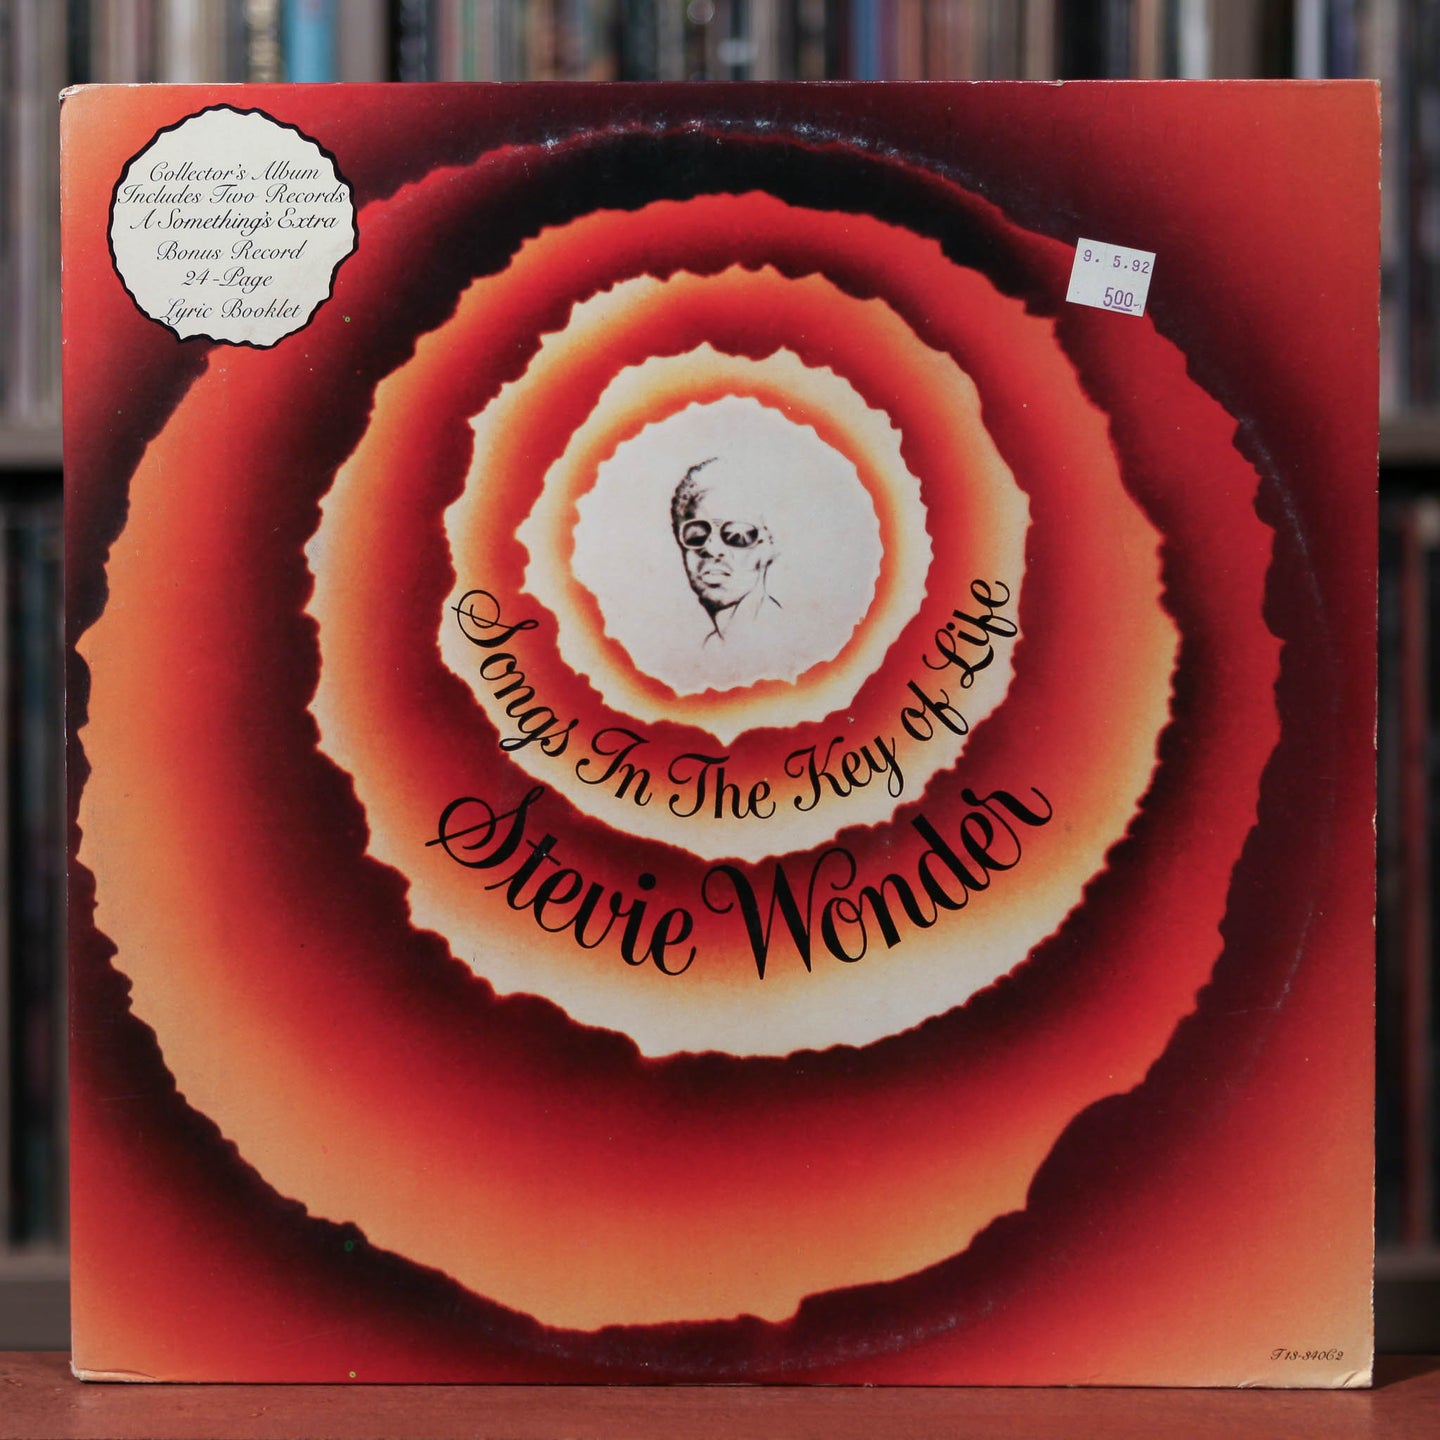 Stevie Wonder - Songs In The Key Of Life - 2LP - 1976 Tamla, VG+/VG w/ 7